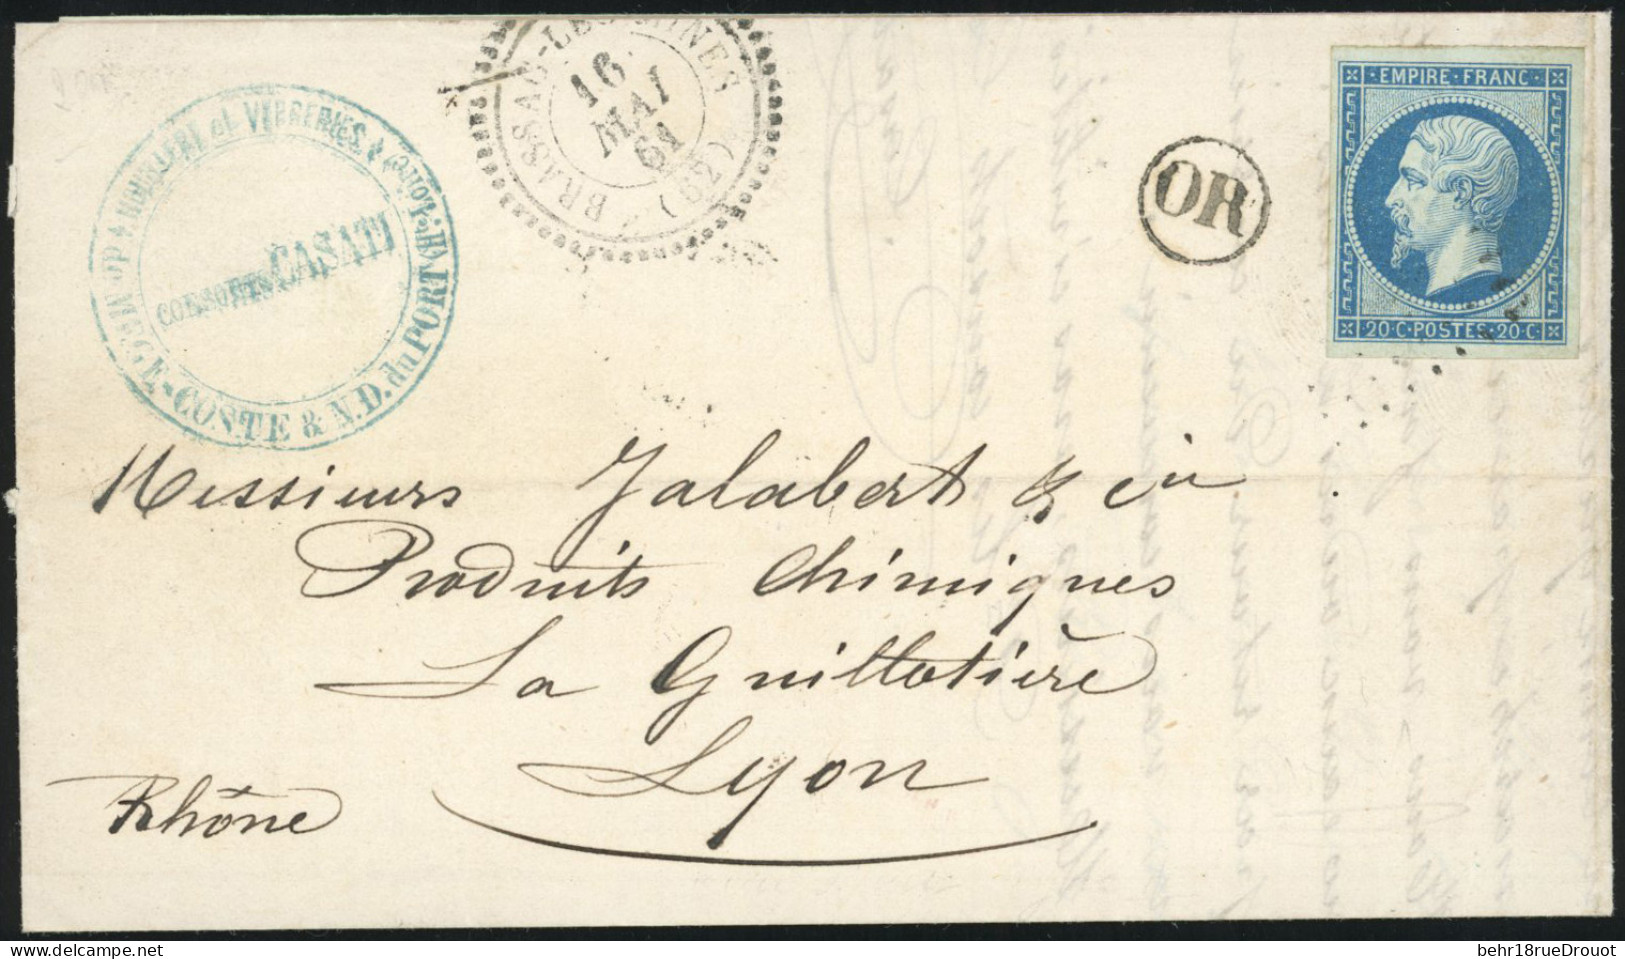 Obl. 14Ba - 20c. Bleu S/vert, Obl. PC 3064 S/lettre Frappée Du Cachet Perlé De BRASSAC-LES-MINES Du 16 Mai 1861 à Destin - 1853-1860 Napoleon III